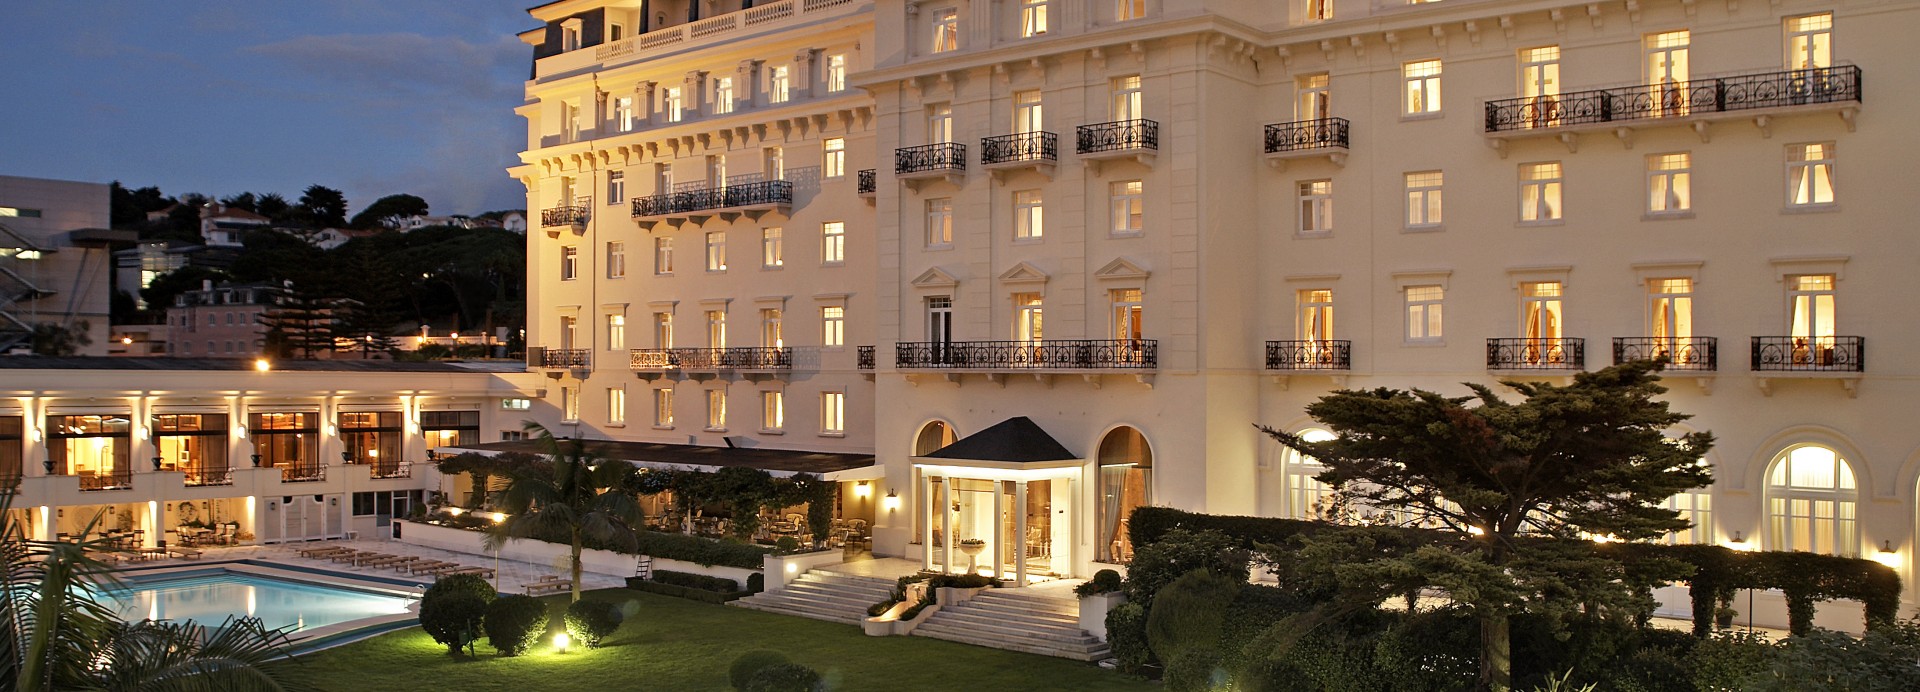 palacio estoril hotel golf & spa   *****